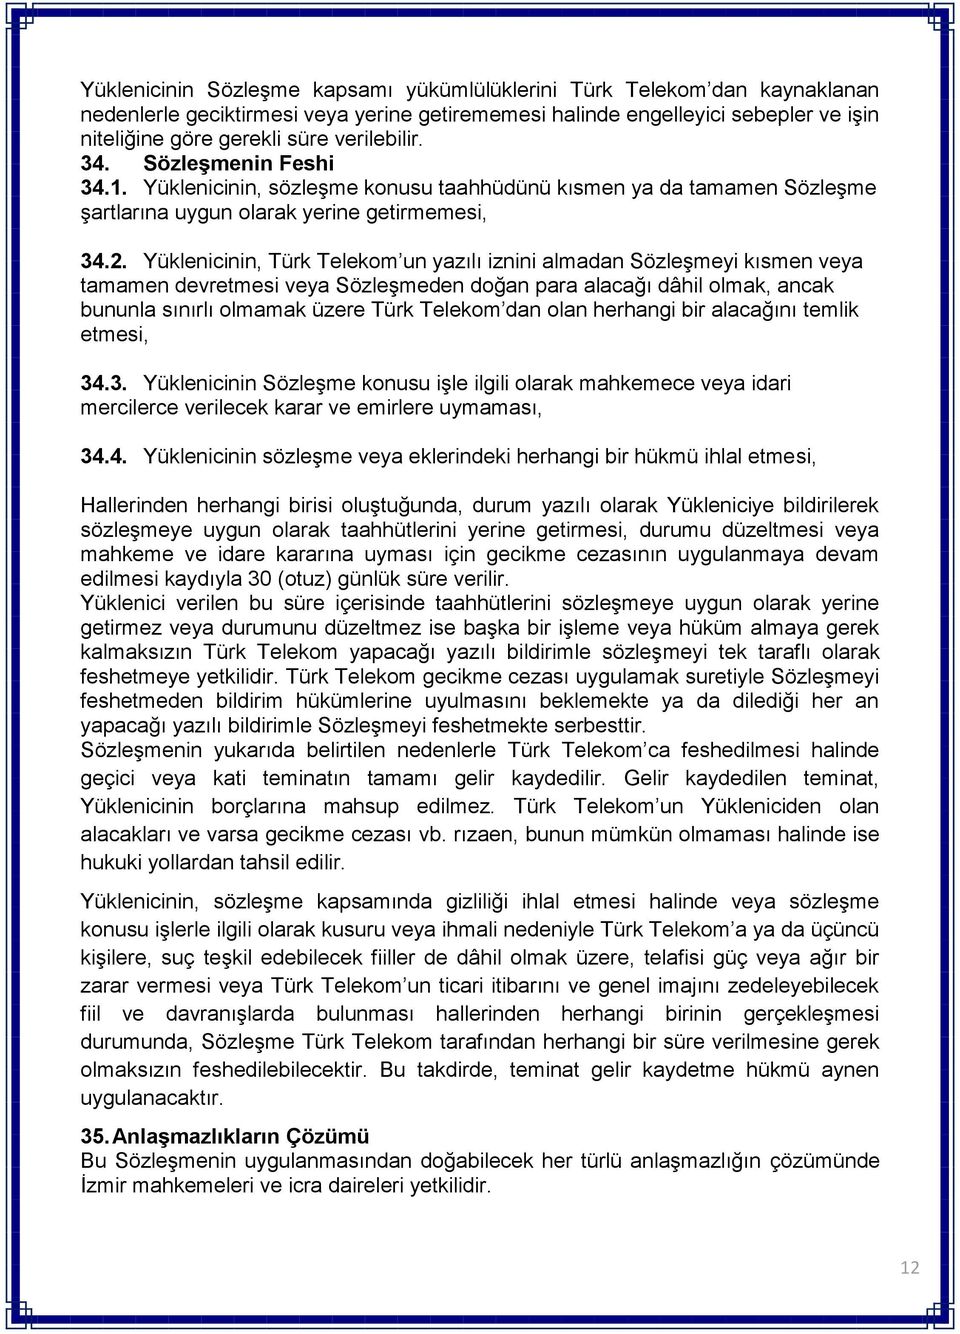 Yüklenicinin, Türk Telekom un yazılı iznini almadan Sözleşmeyi kısmen veya tamamen devretmesi veya Sözleşmeden doğan para alacağı dâhil olmak, ancak bununla sınırlı olmamak üzere Türk Telekom dan